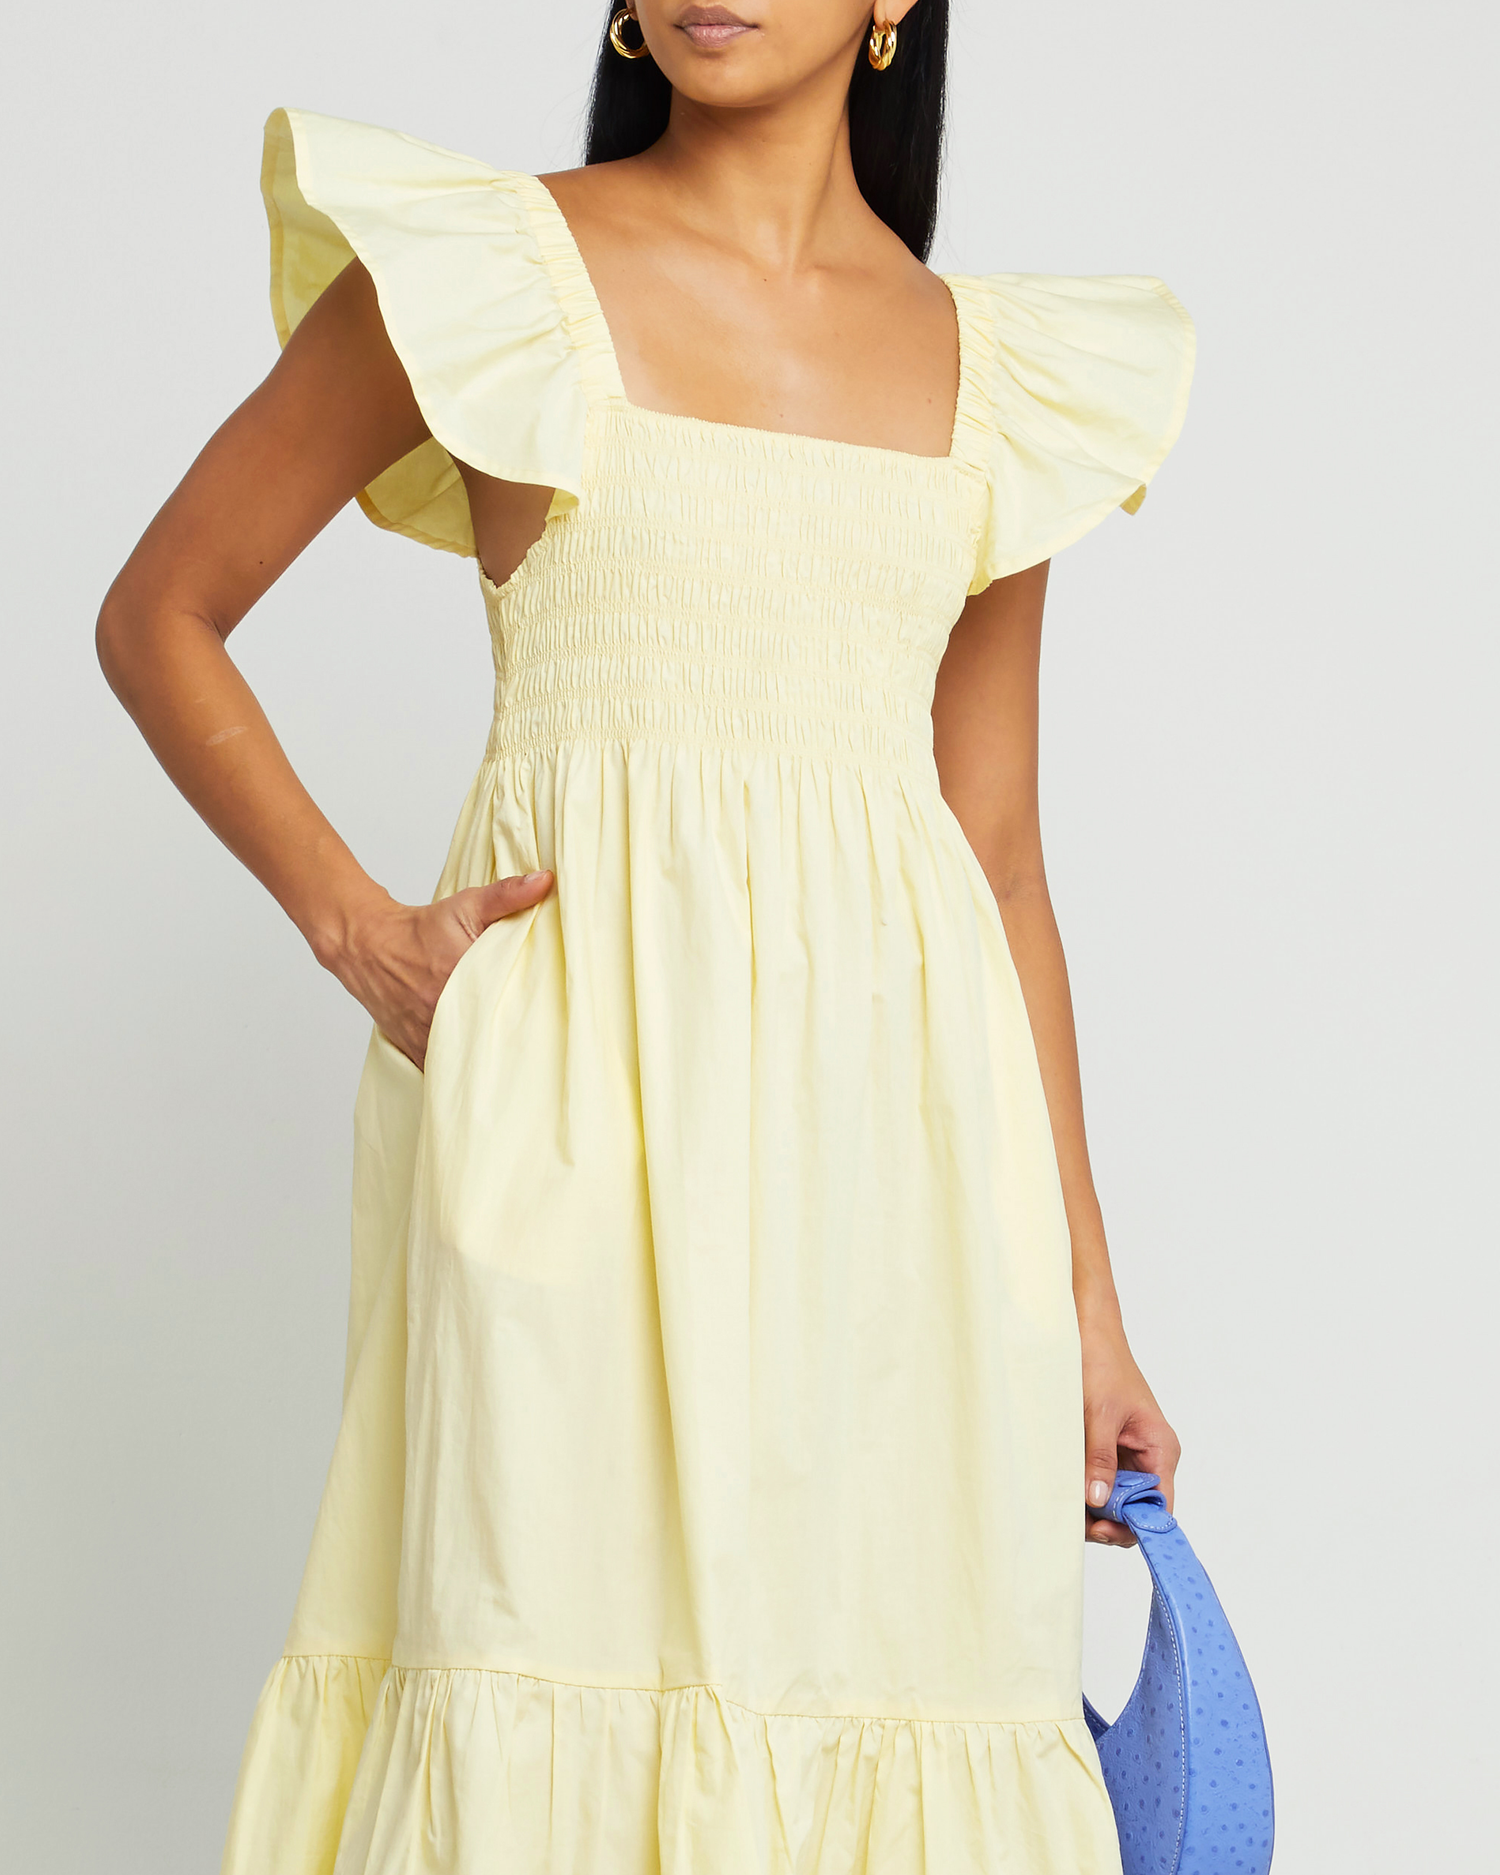 Sixth image of Tuscany Dress, a yellow midi dress, smocked bodice, ruffled cap sleeves, pockets